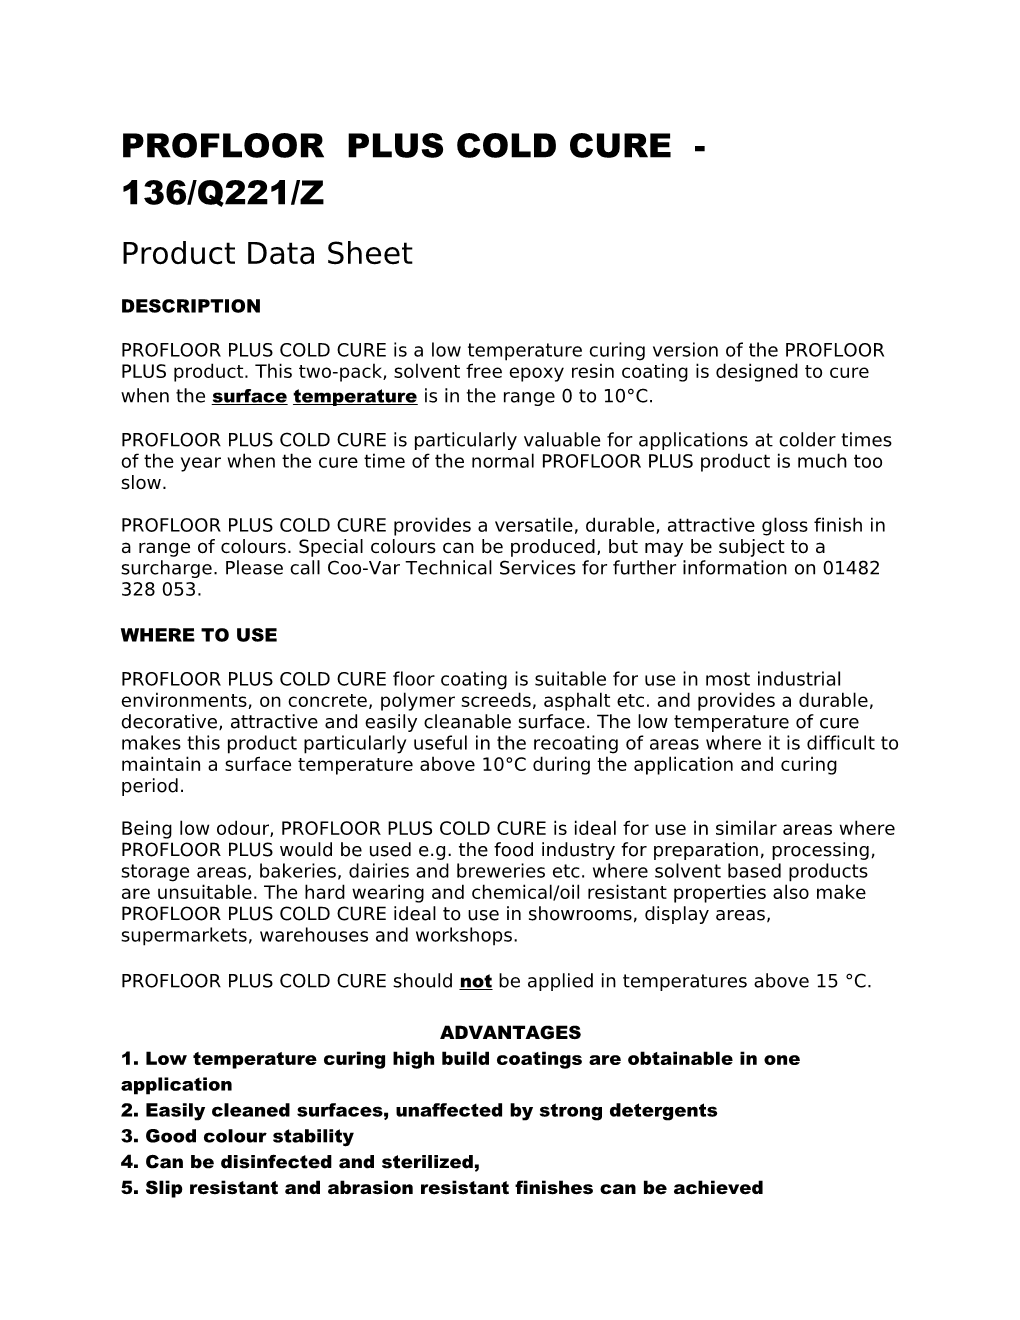 Profloor Plus Cold Cure - 136/Q221/Z